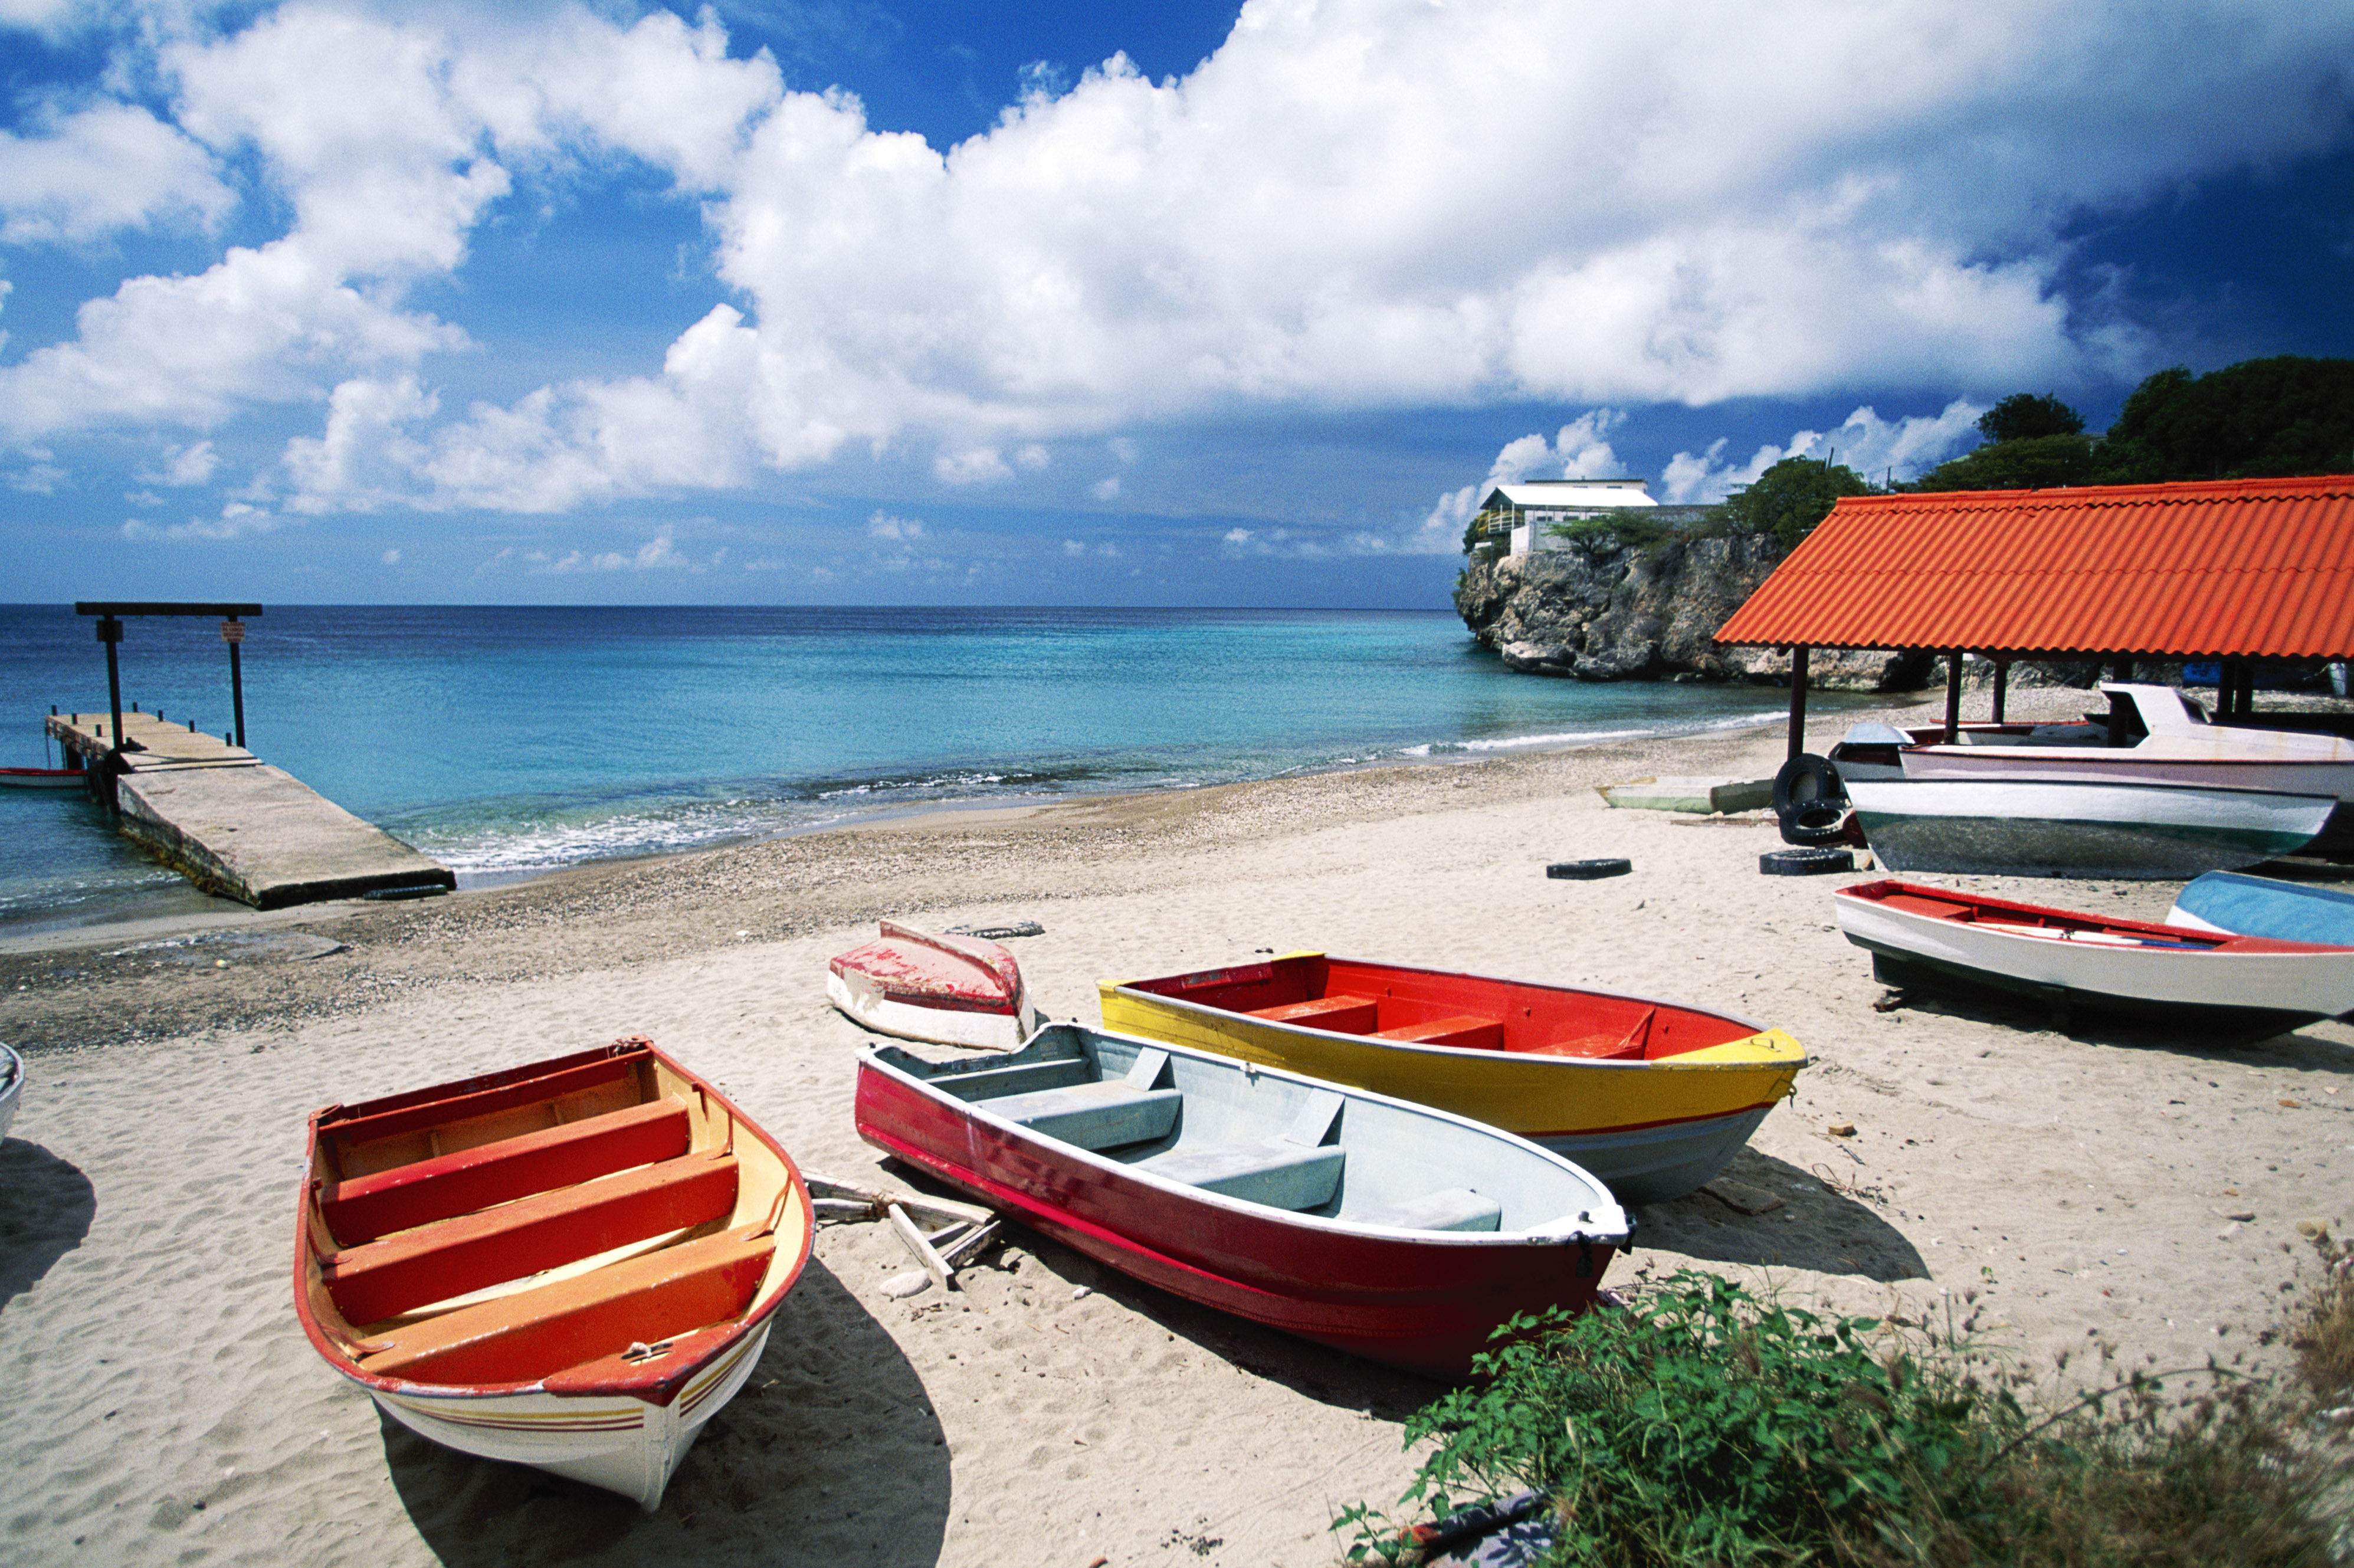 Boats on the beach, Curacao